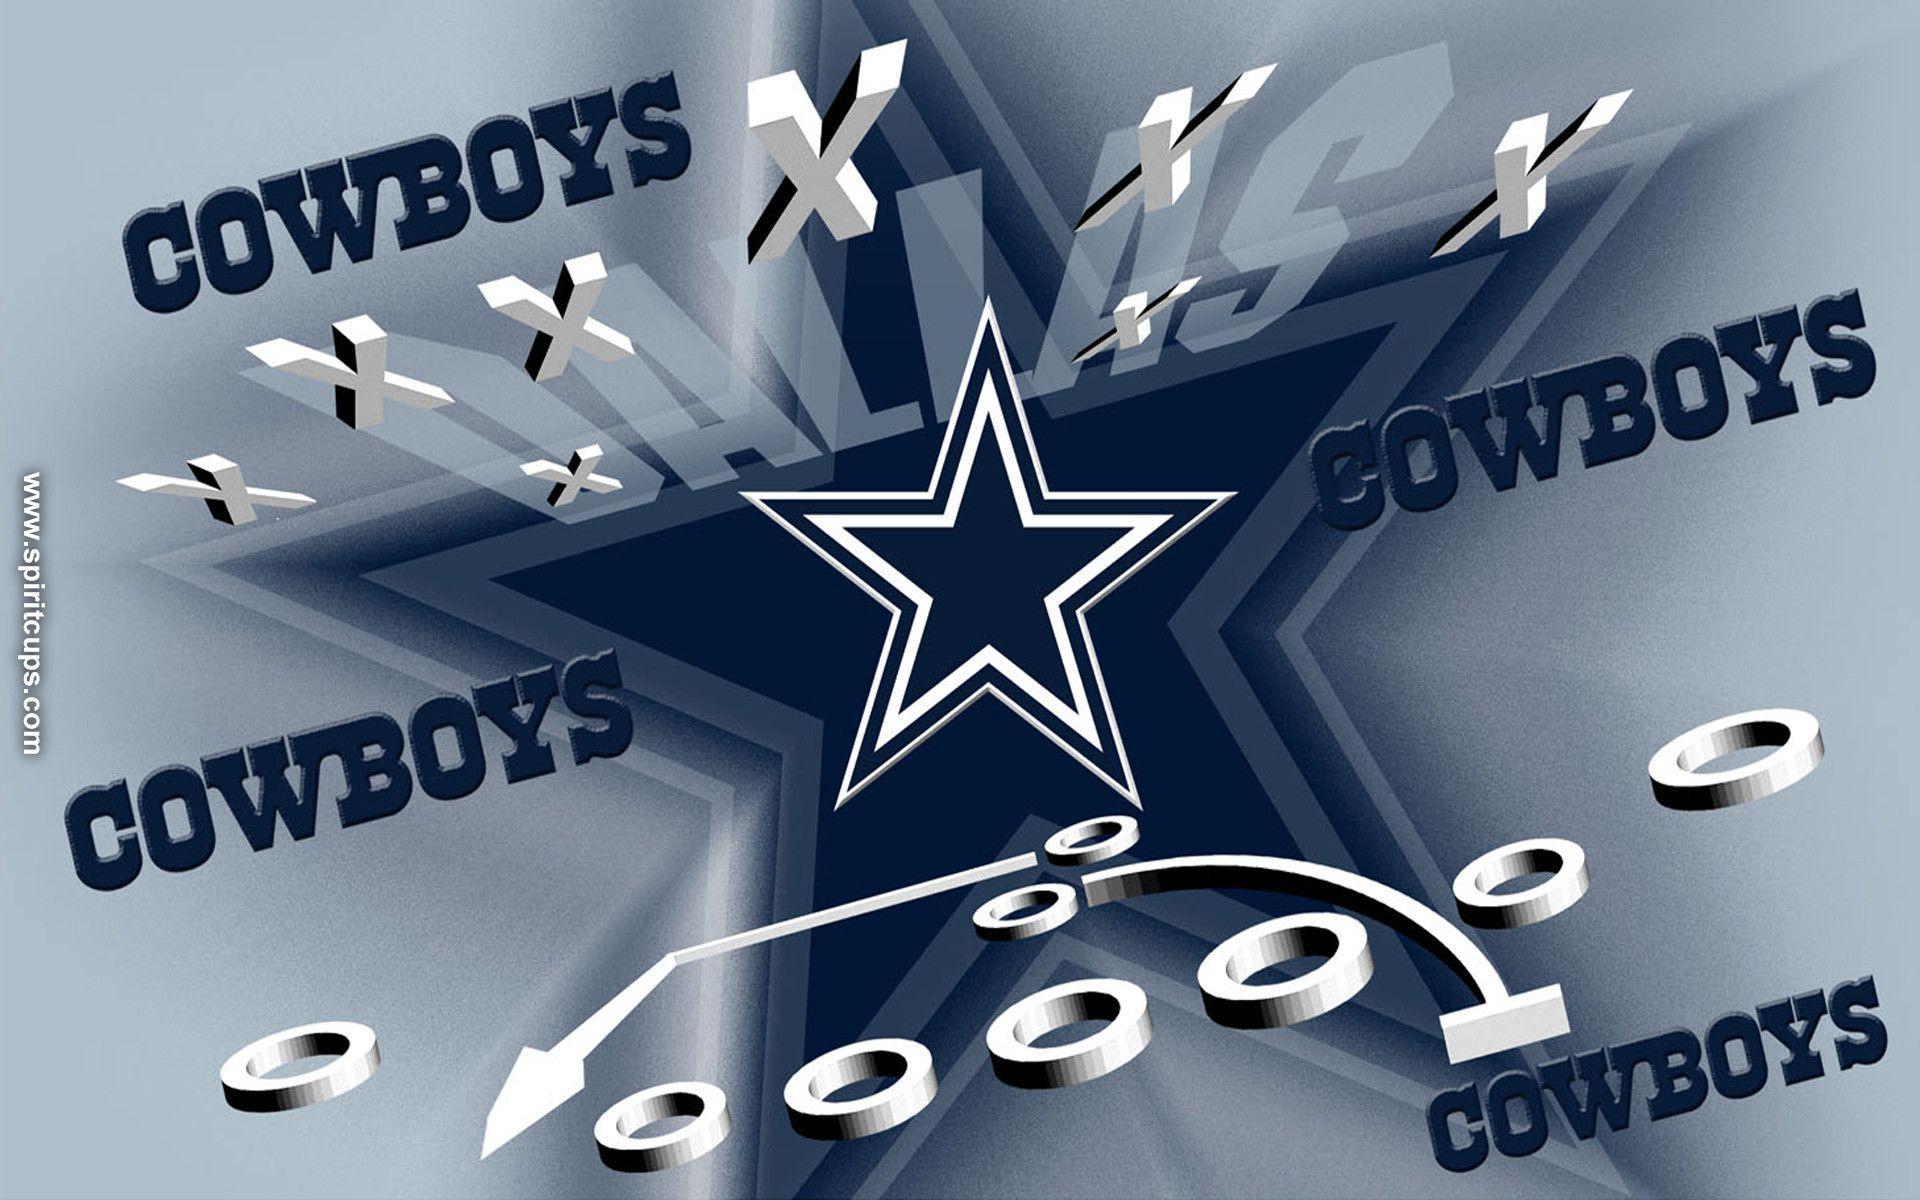 Dallas Cowboys Desktop Wallpaper